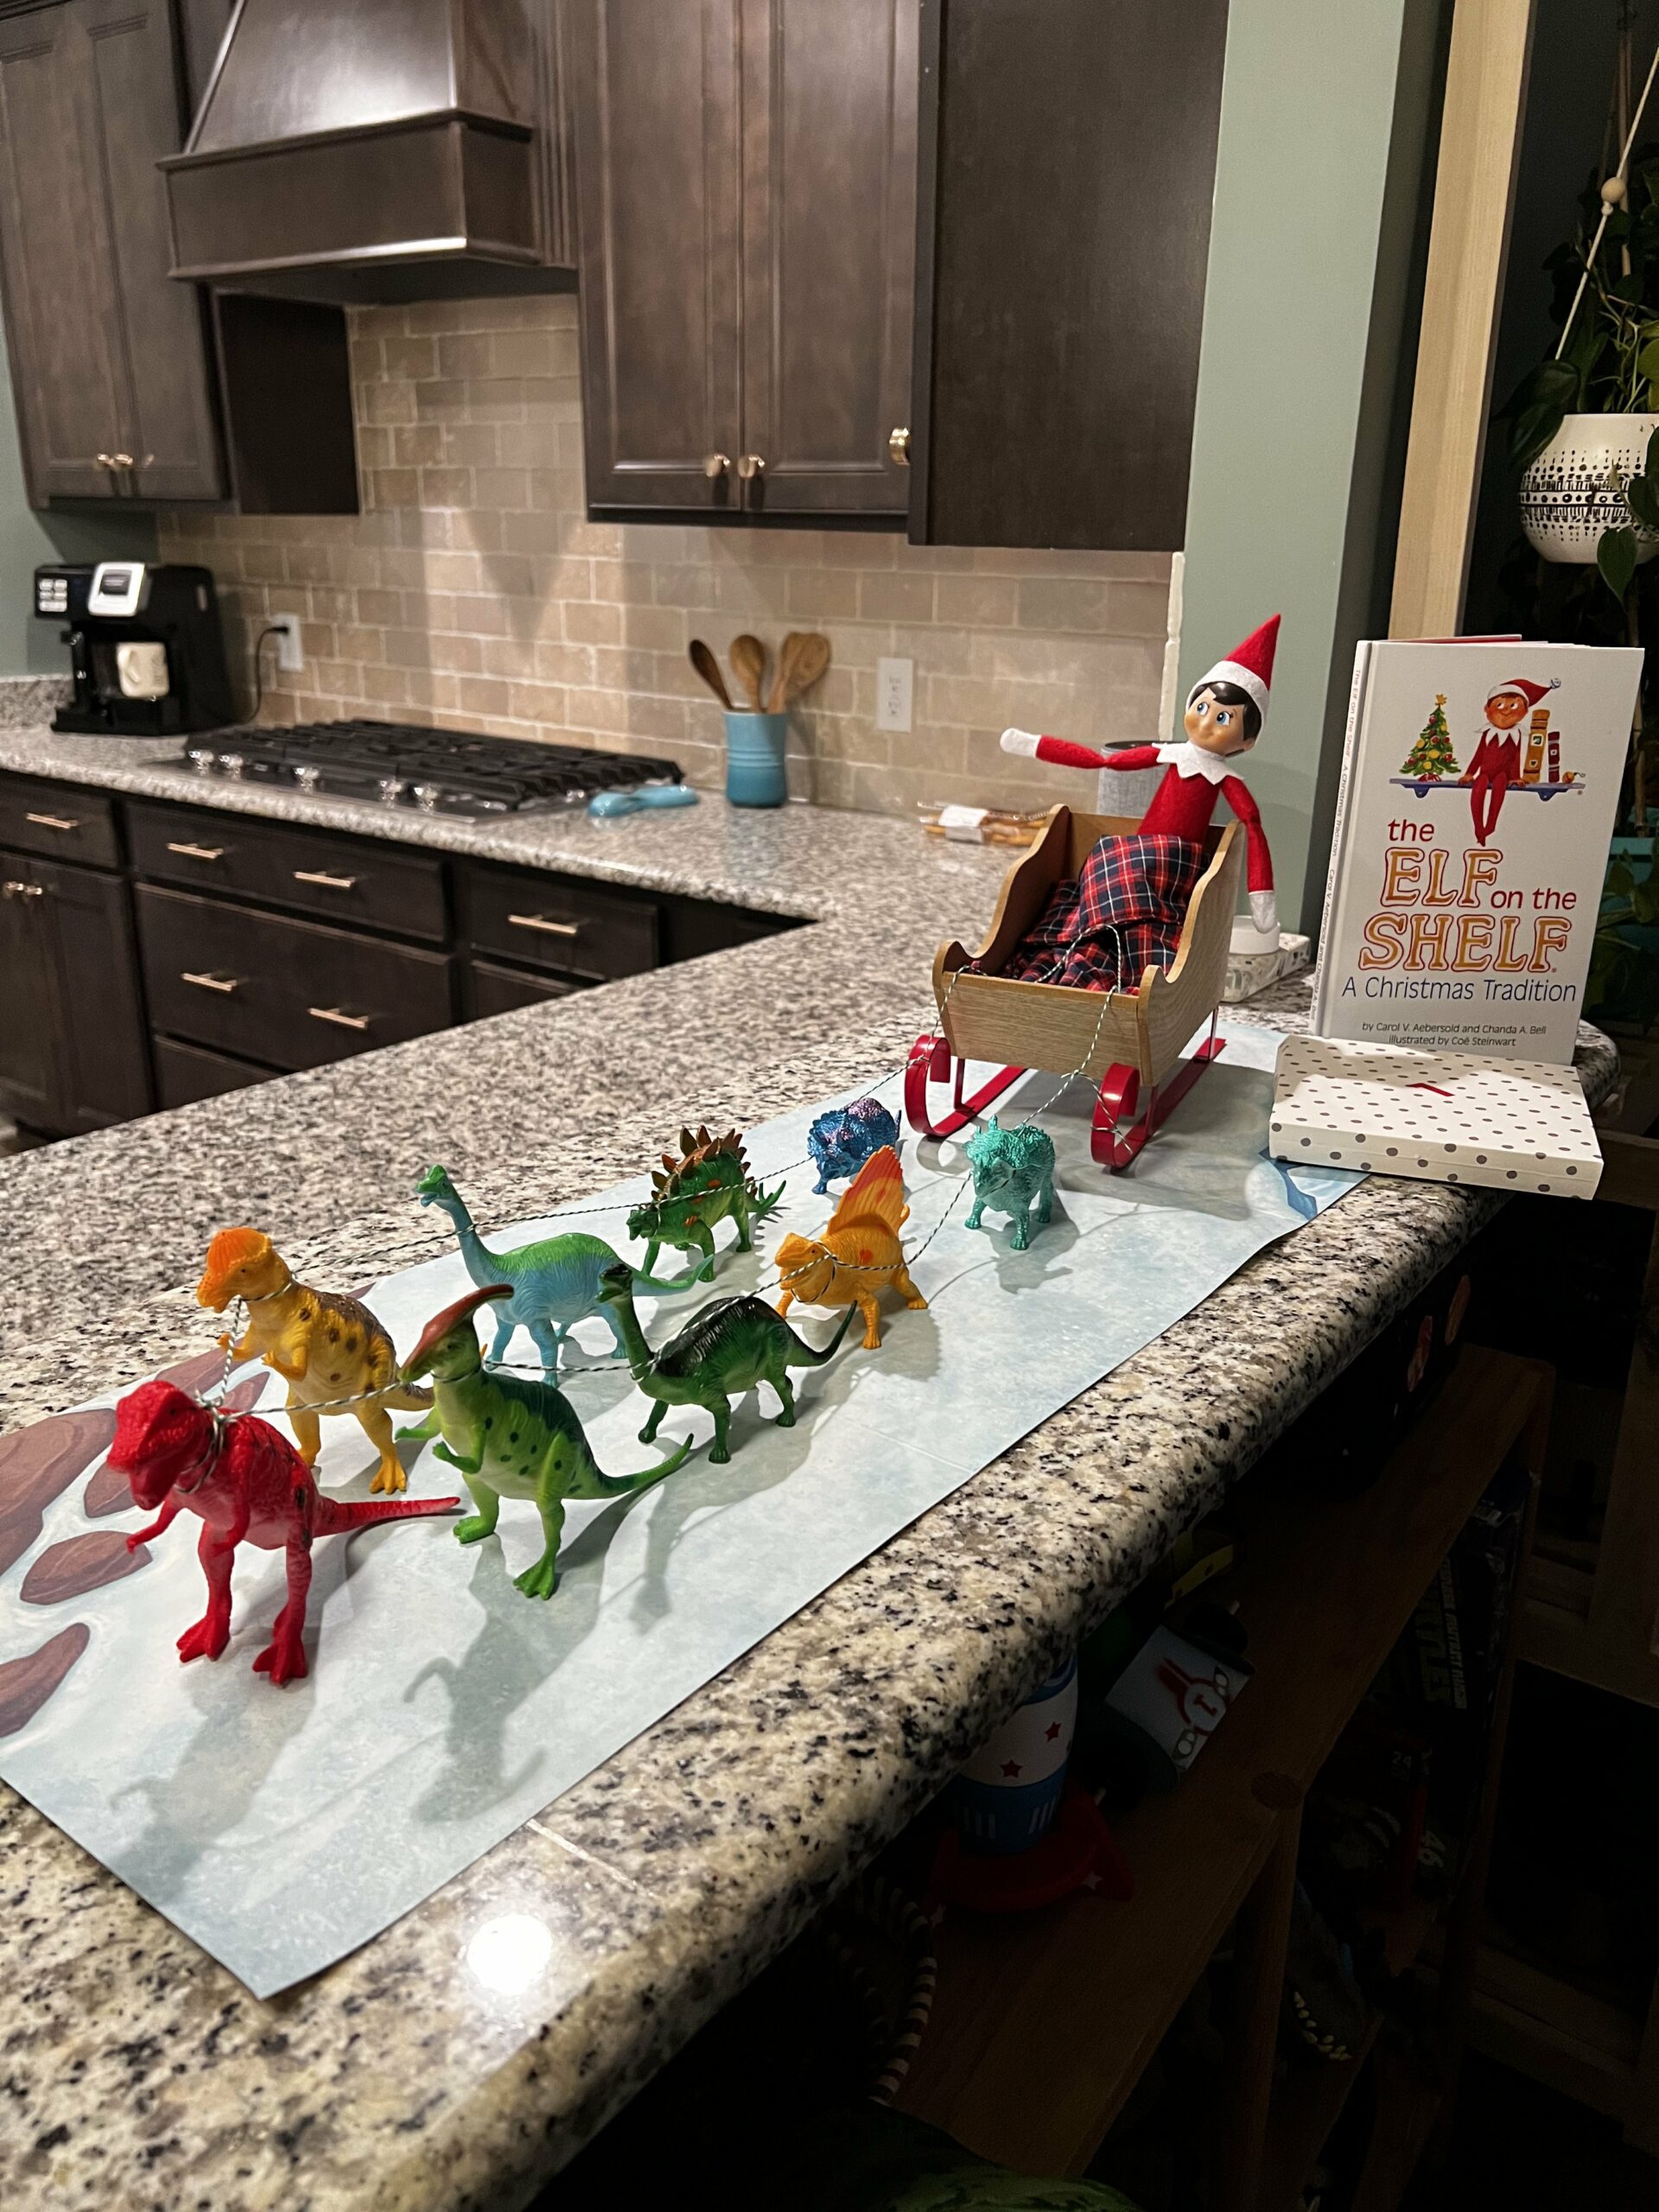 Elf on the Shelf idea: dinosaur sled - Celebrating with kids